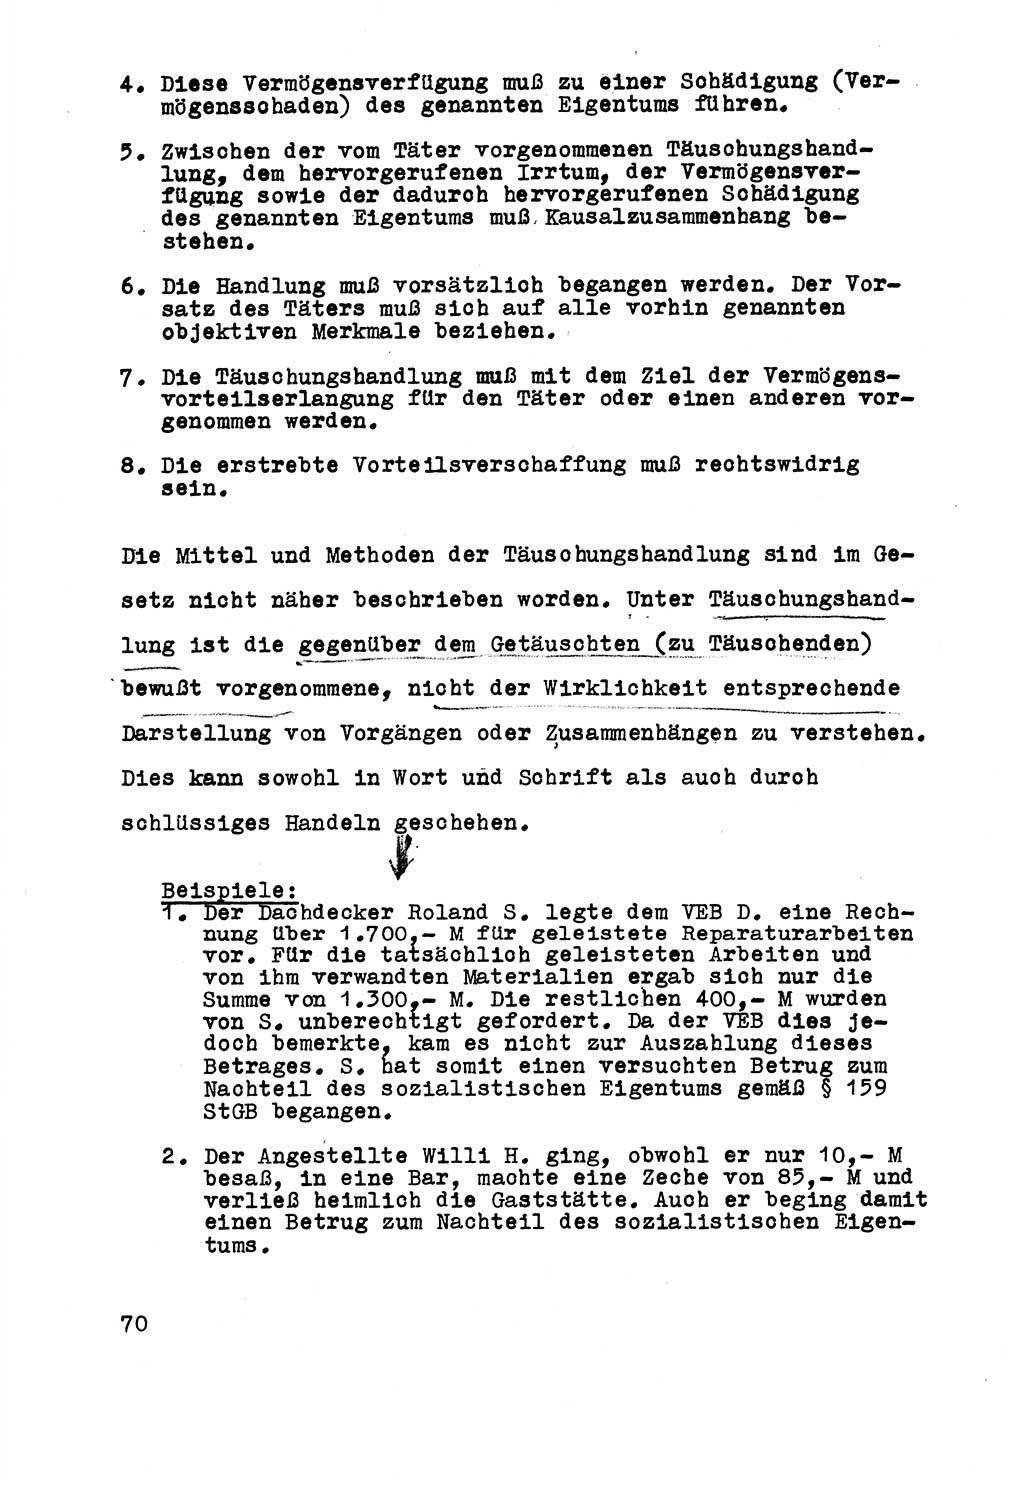 Strafrecht der DDR (Deutsche Demokratische Republik), Besonderer Teil, Lehrmaterial, Heft 5 1970, Seite 70 (Strafr. DDR BT Lehrmat. H. 5 1970, S. 70)